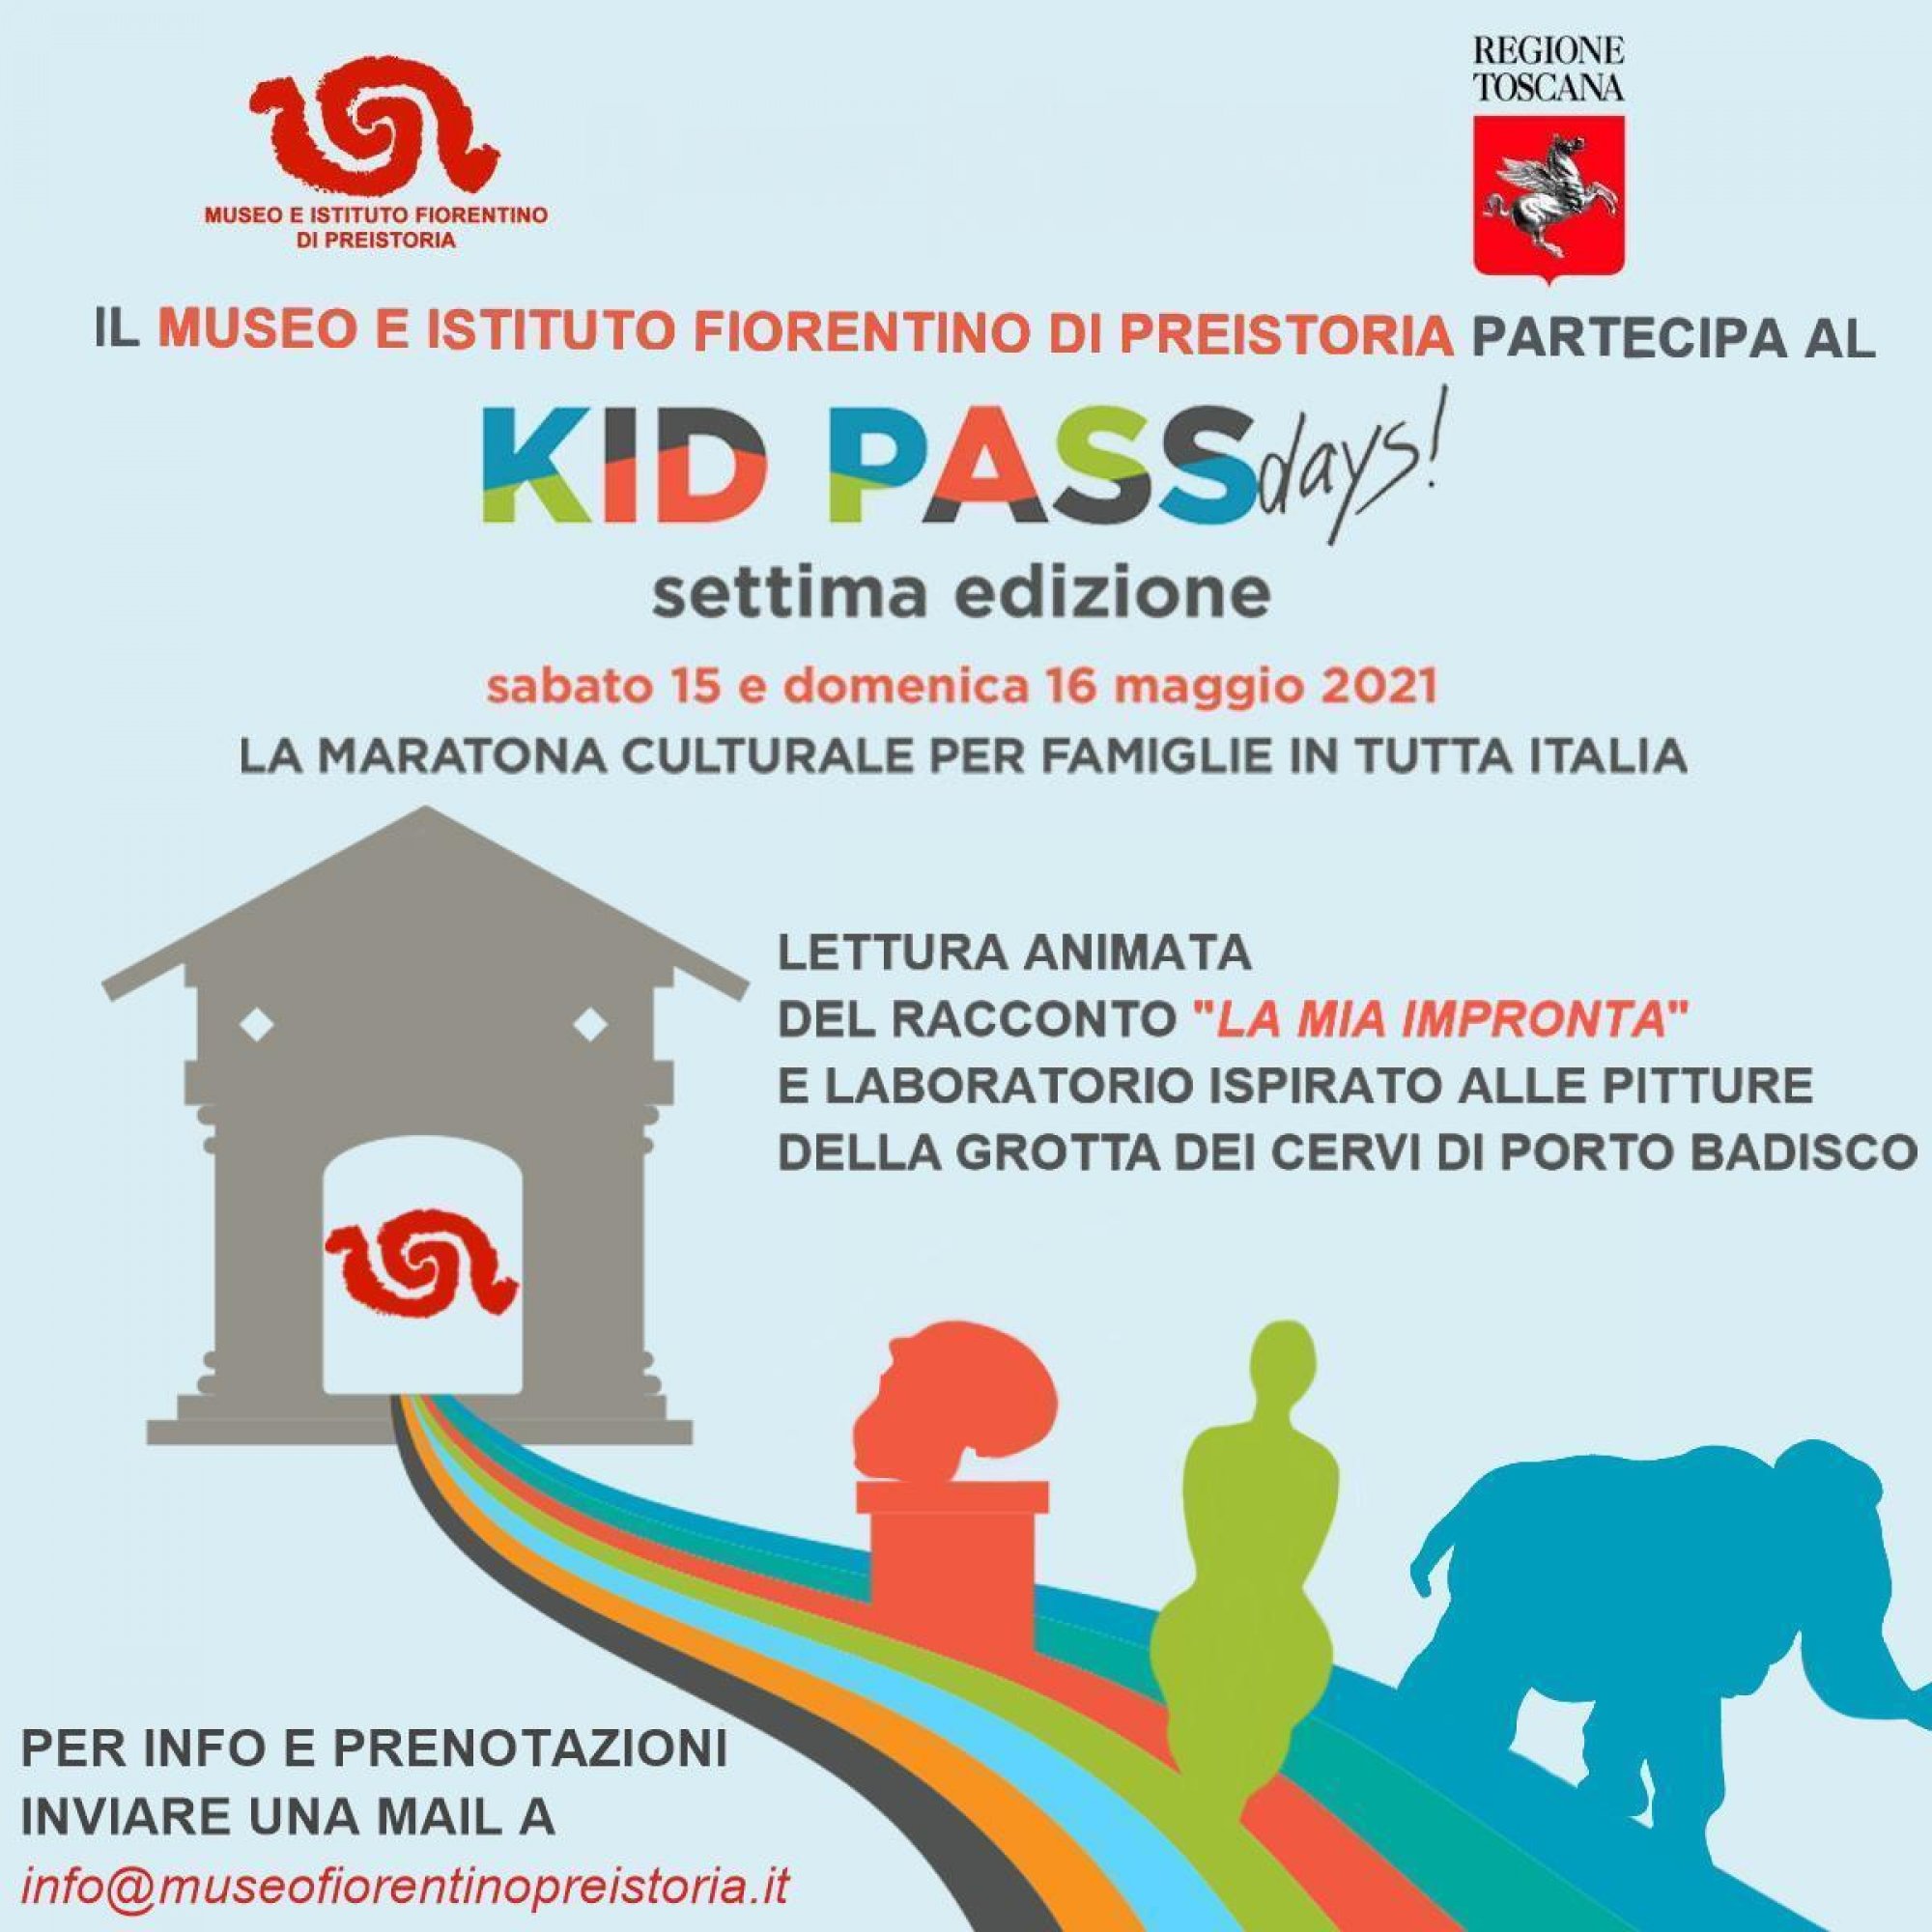 Il Museo e Istituto Fiorentino di Preistoria aderisce ai Kid Passa Days